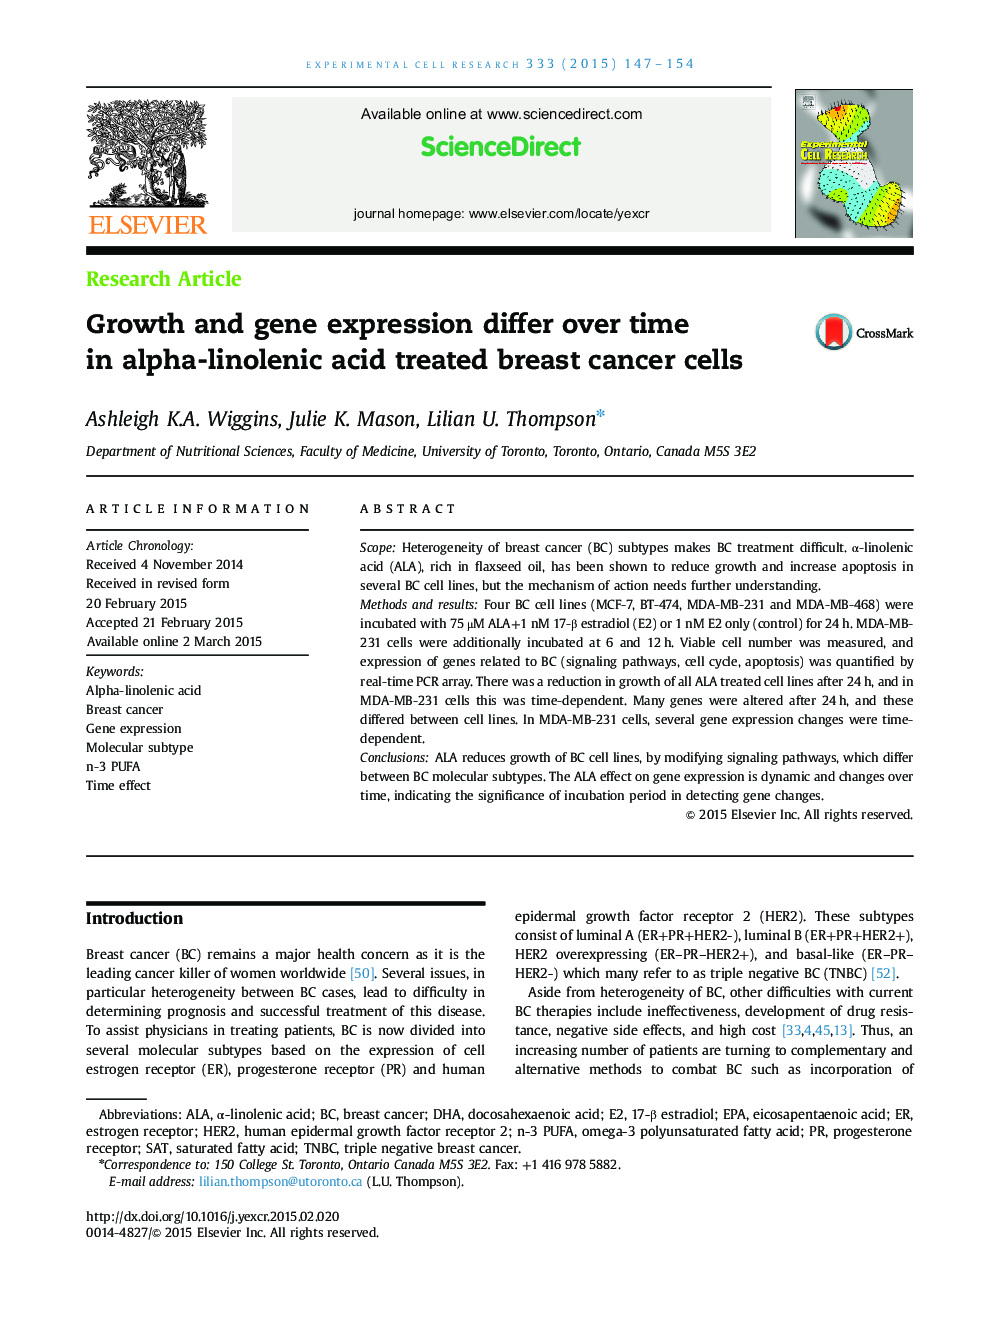 رشد و بیان ژن در طول زمان در سلول های سرطانی پستان درمان شده با اسید آلفا لینولنیک متفاوت است 